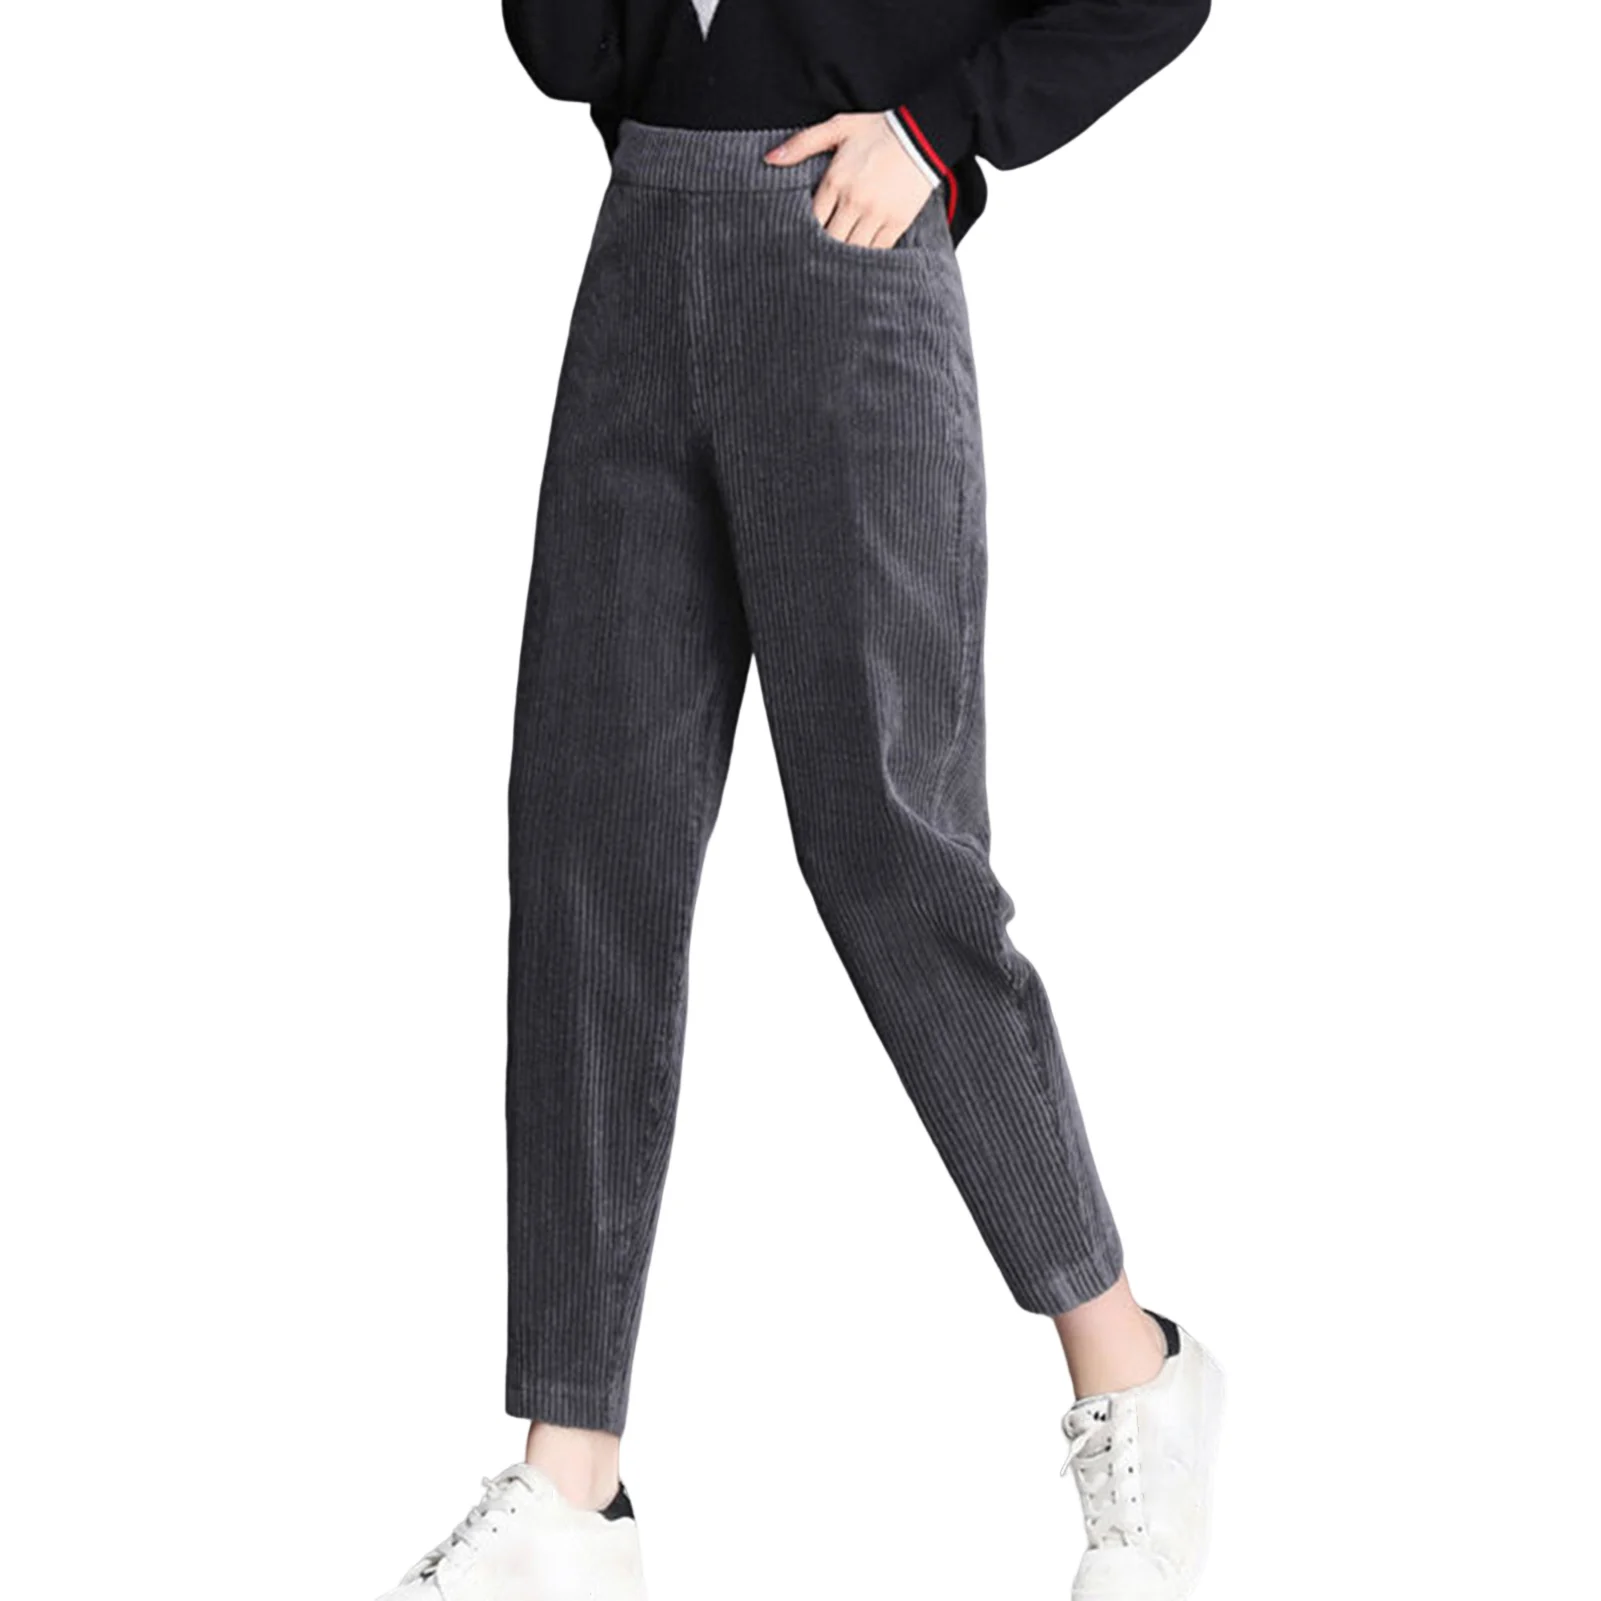 

Женские вельветовые брюки с флисовой подкладкой, теплые спортивные брюки с эластичным поясом, Брюки с карманами для школы и офиса, женская верхняя одежда